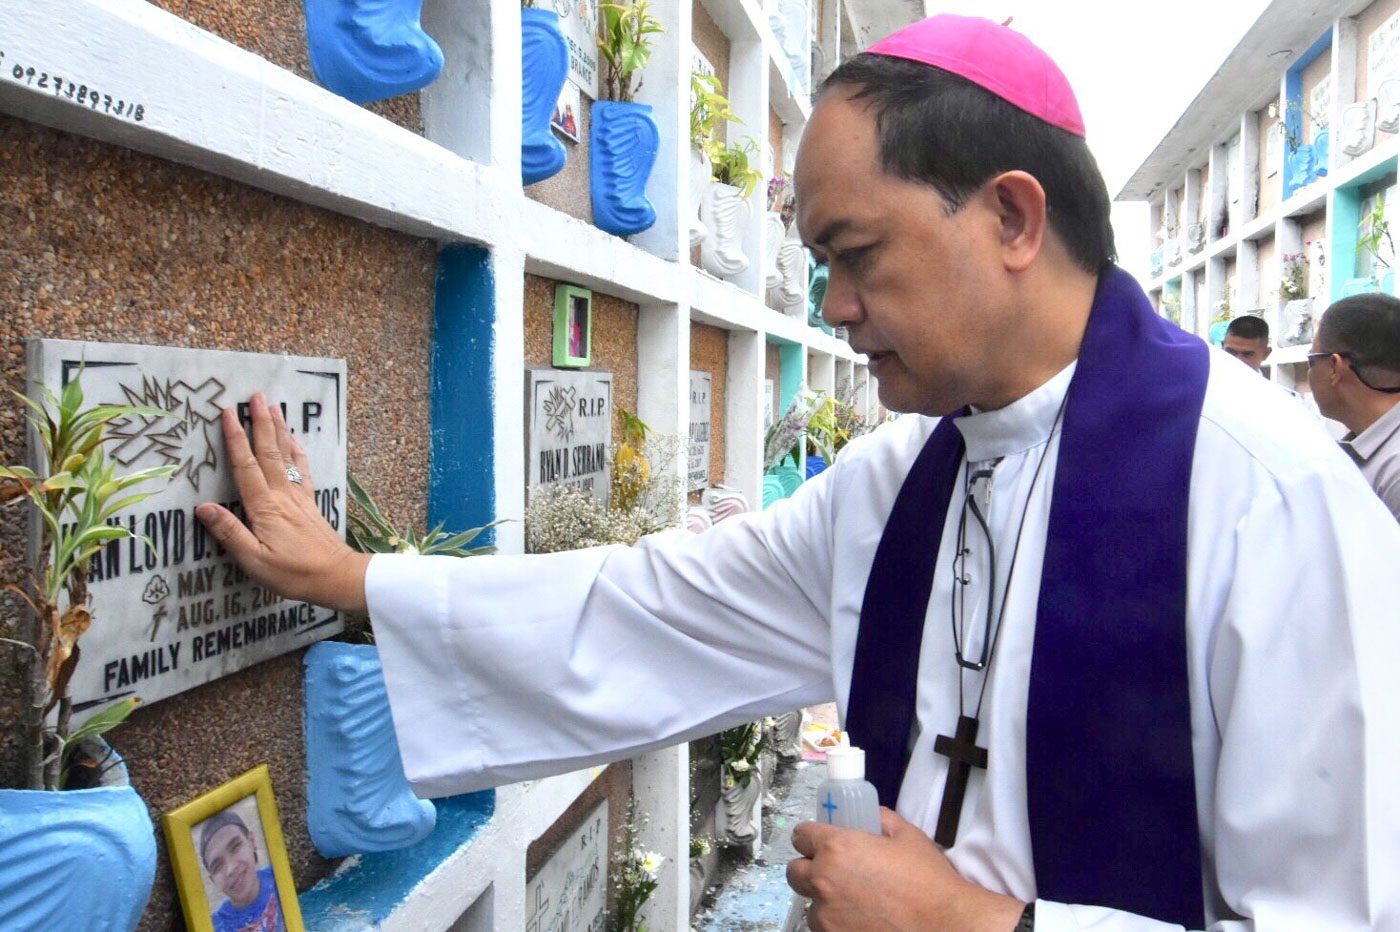 Bishop critical of Duterte drug war gets death threats